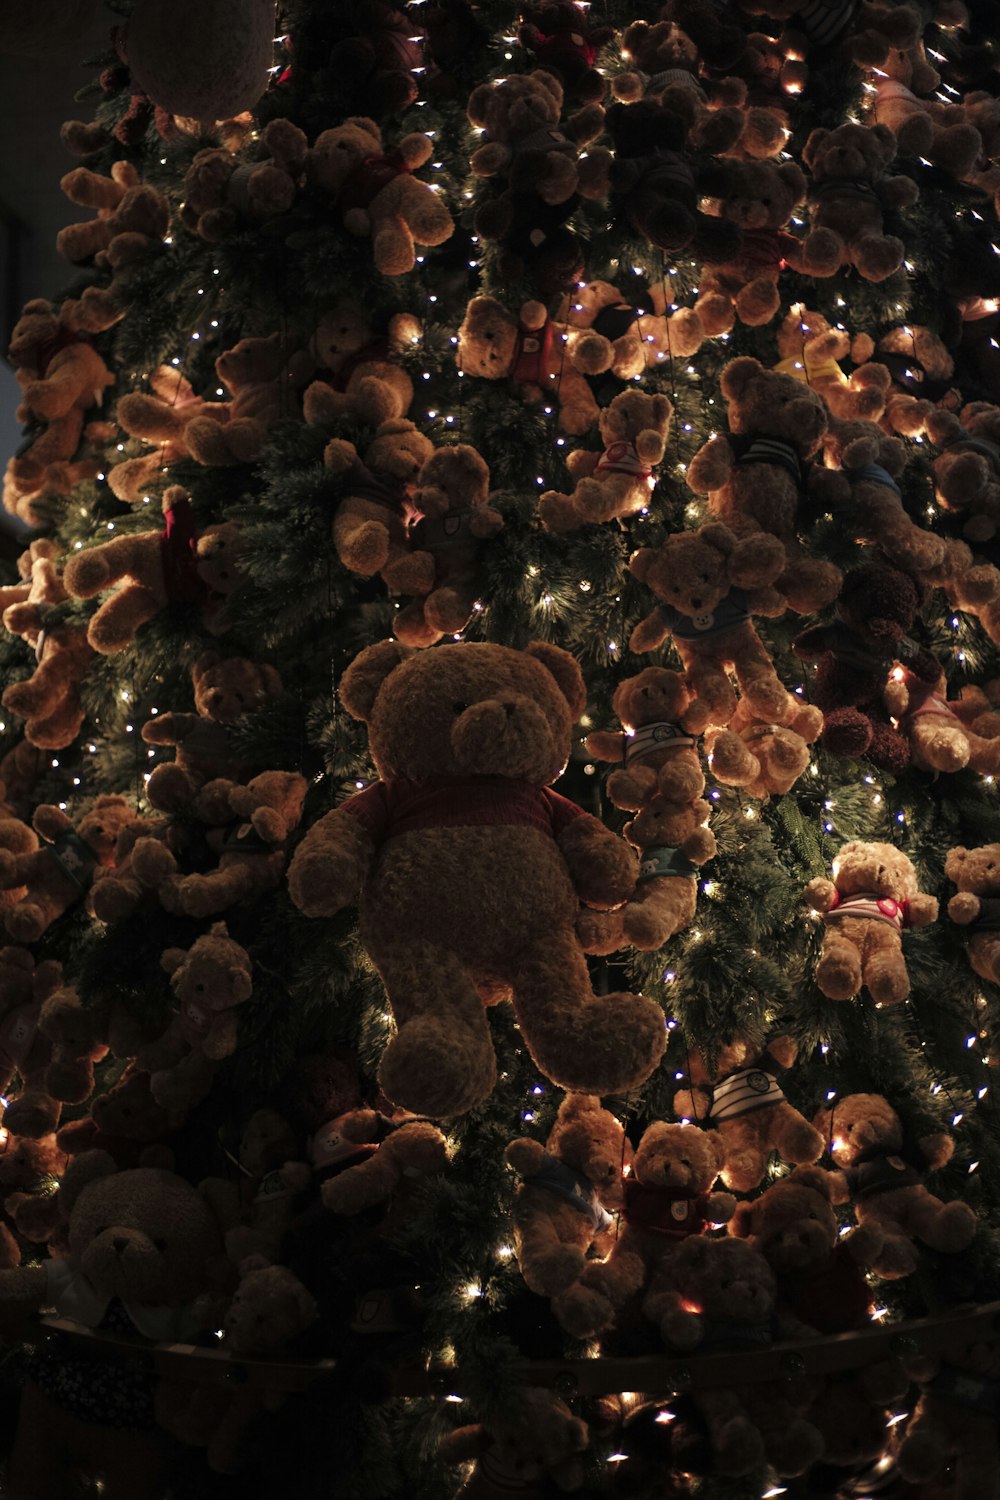 Um ursinho de pelúcia sentado em cima de uma árvore de Natal